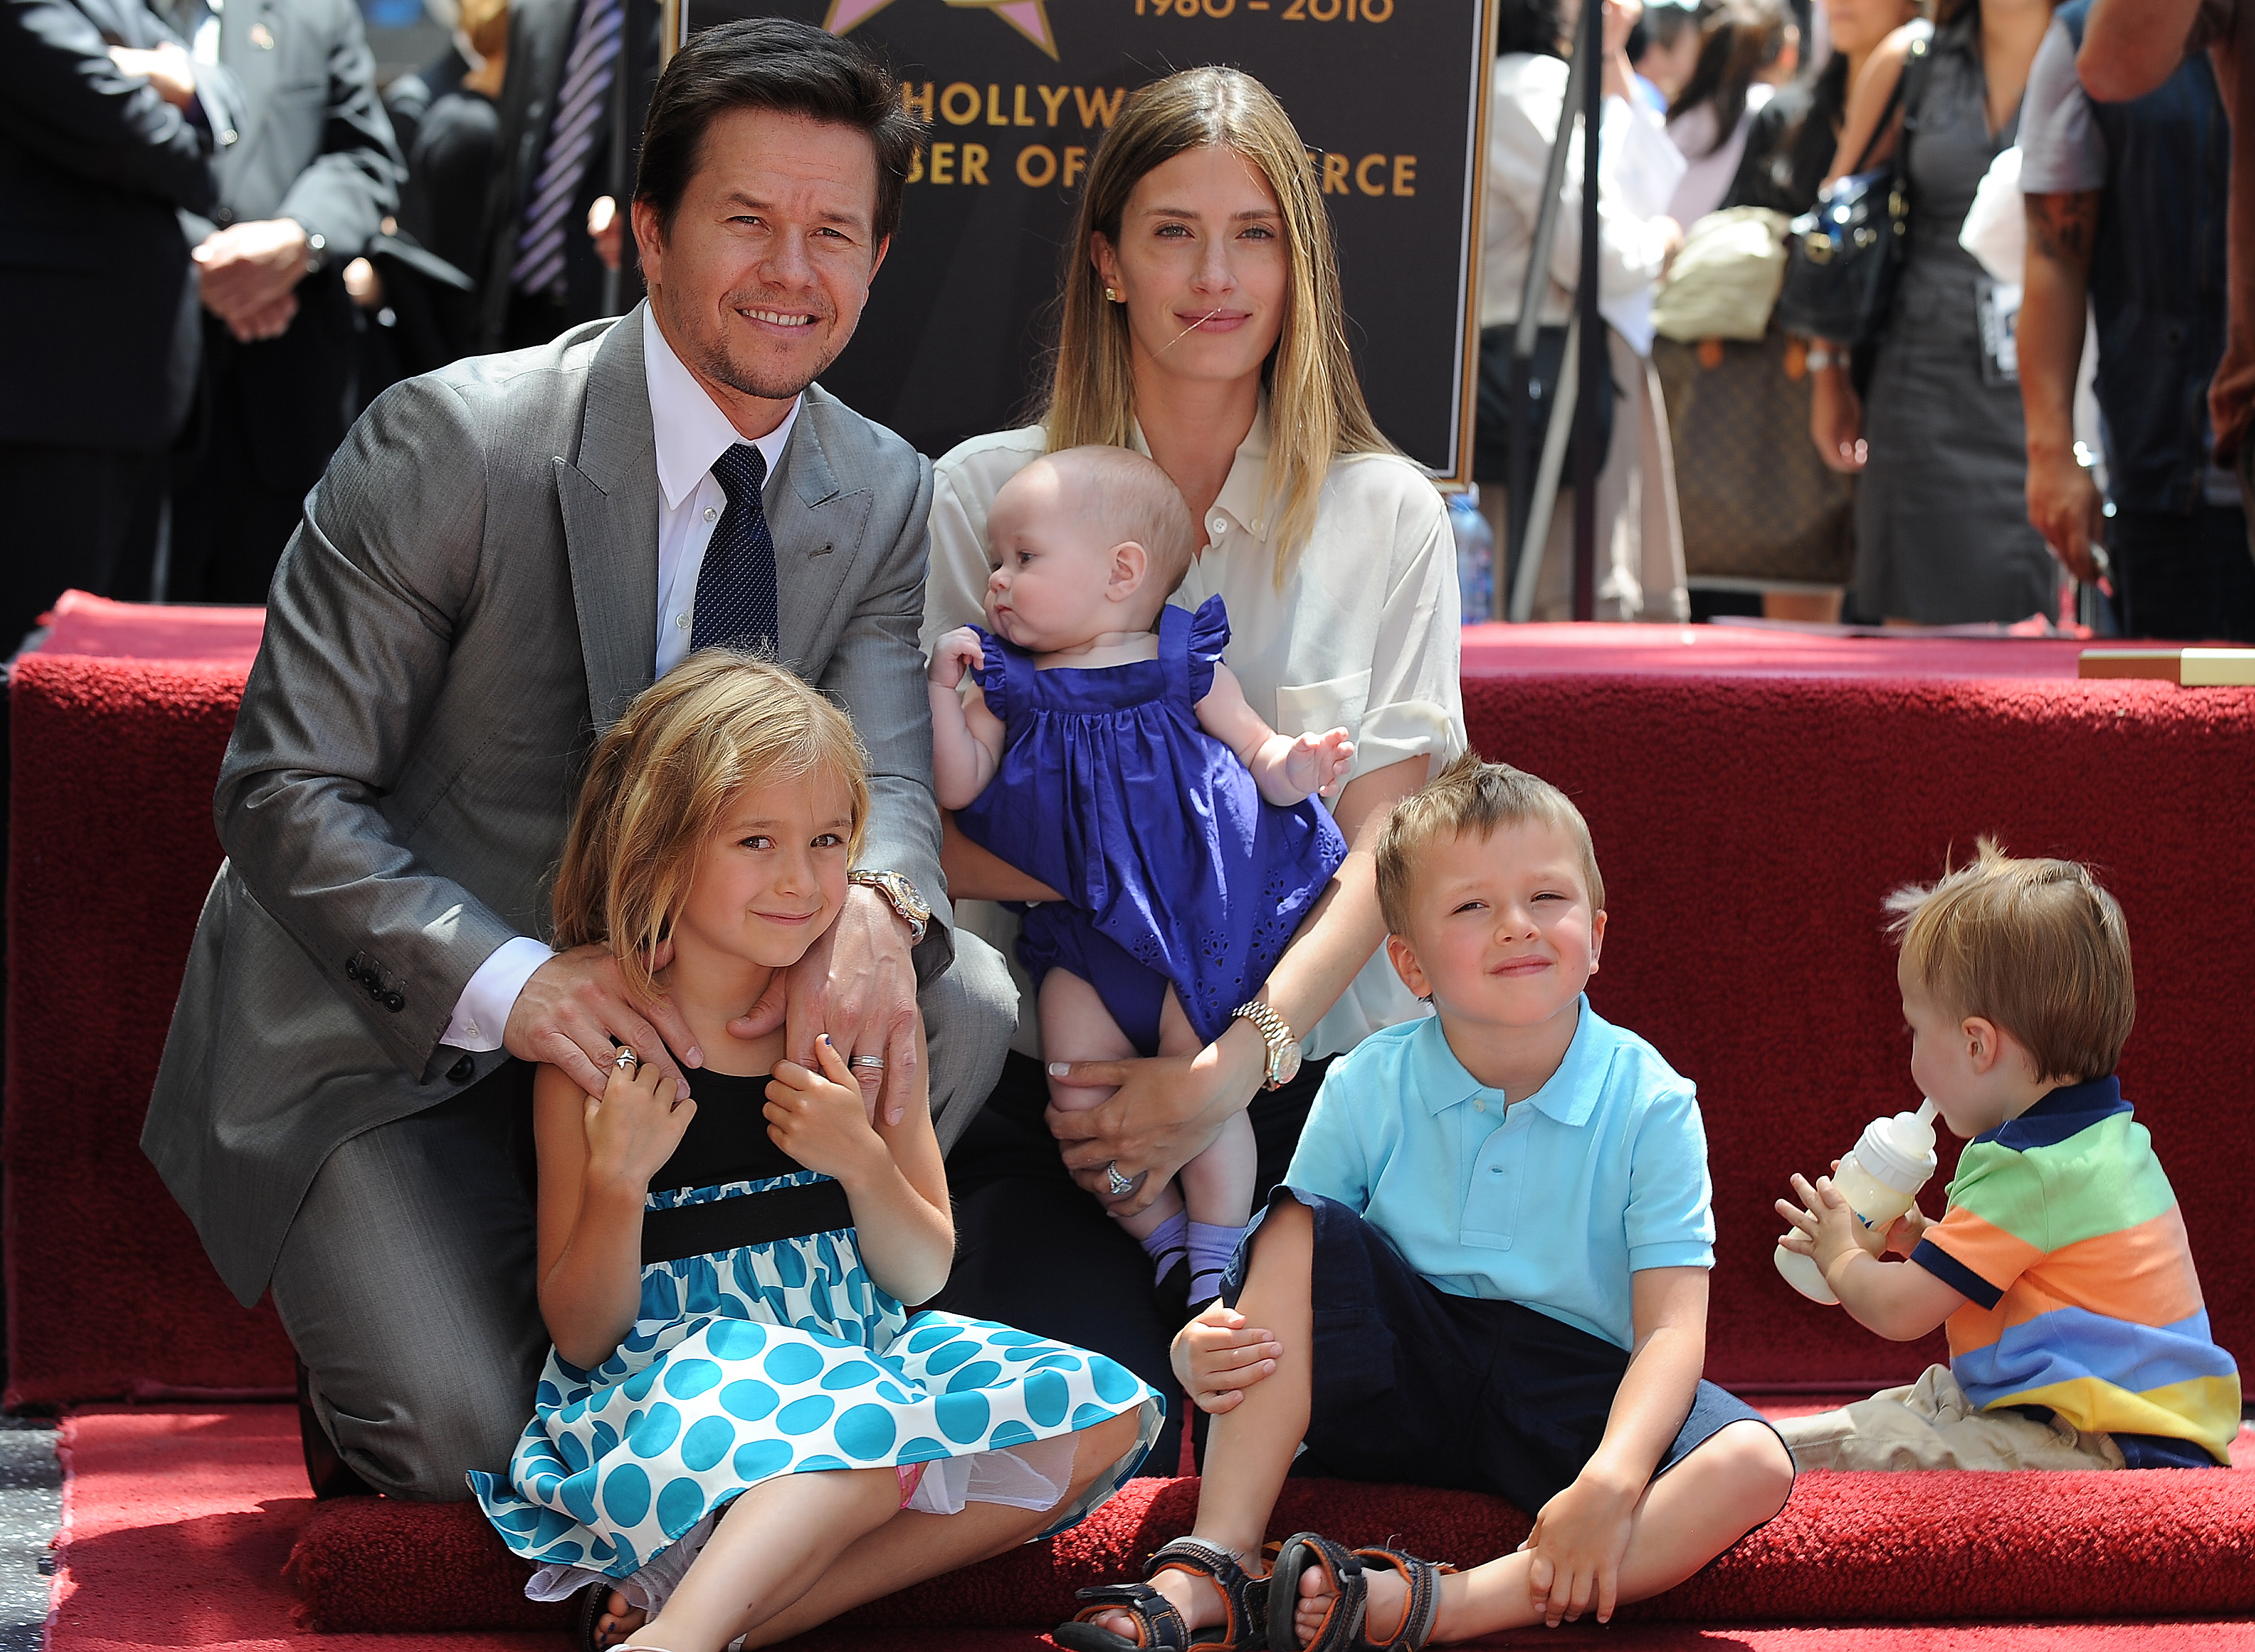 Mark Wahlberg, accompagné de sa femme Rhea Durham et de leurs enfants Ella, Michael, Brendan et Grace, participe fièrement à la cérémonie de remise de l'étoile de Wahlberg sur le Hollywood Walk of Fame, un moment mémorable le 29 juillet 2010, à Hollywood, en Californie | Source : Getty Images